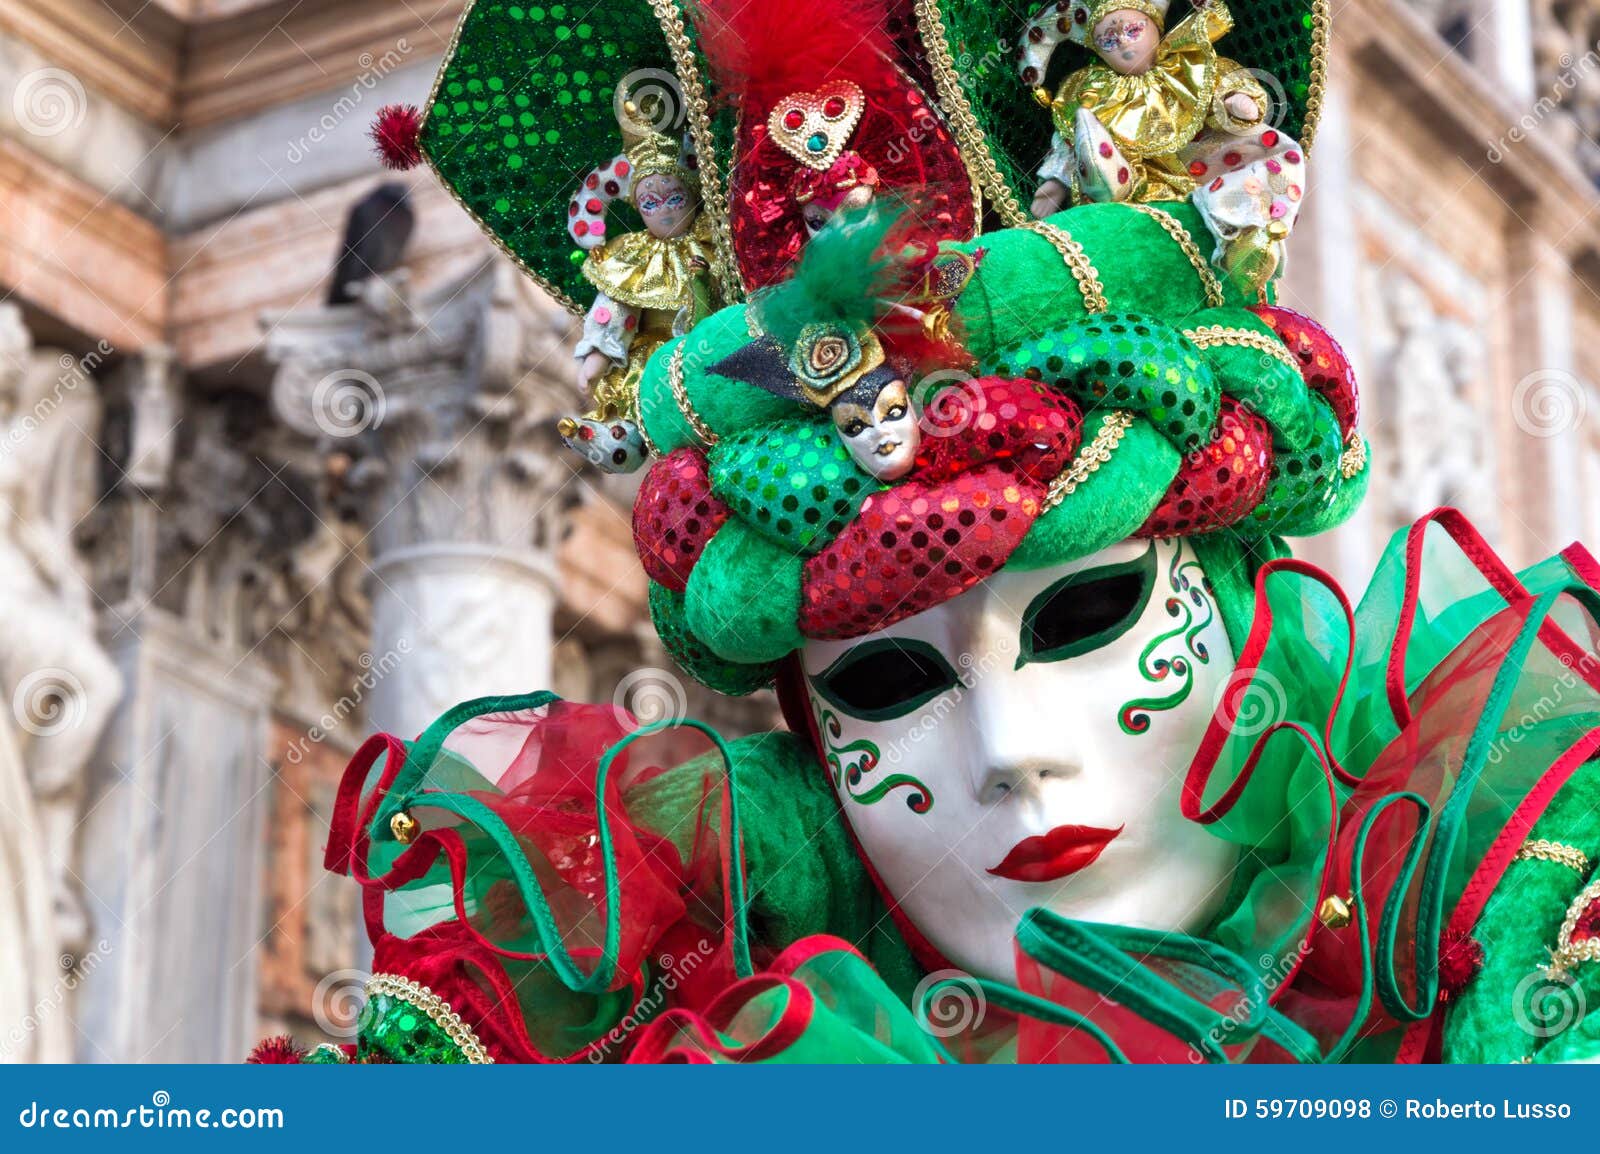 Máscara de carnaval de venecia durante el carnaval en venecia italia